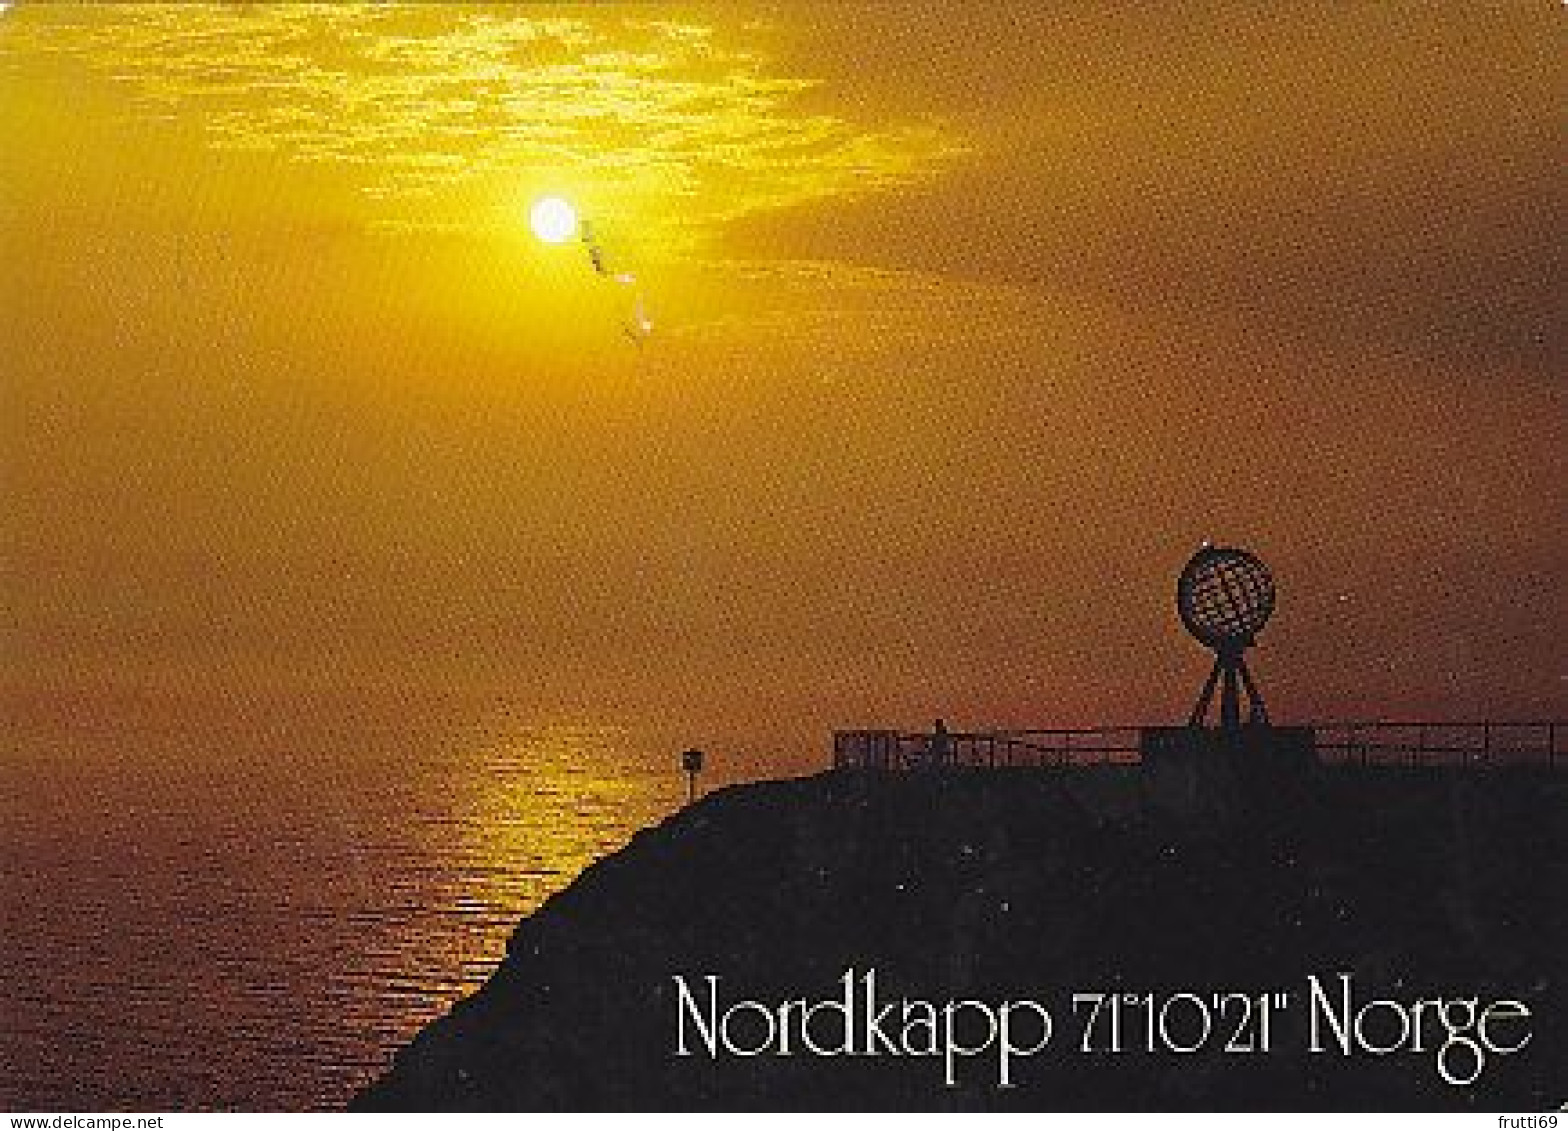 AK 216169 NORWAY - Nordkapp - Norvège